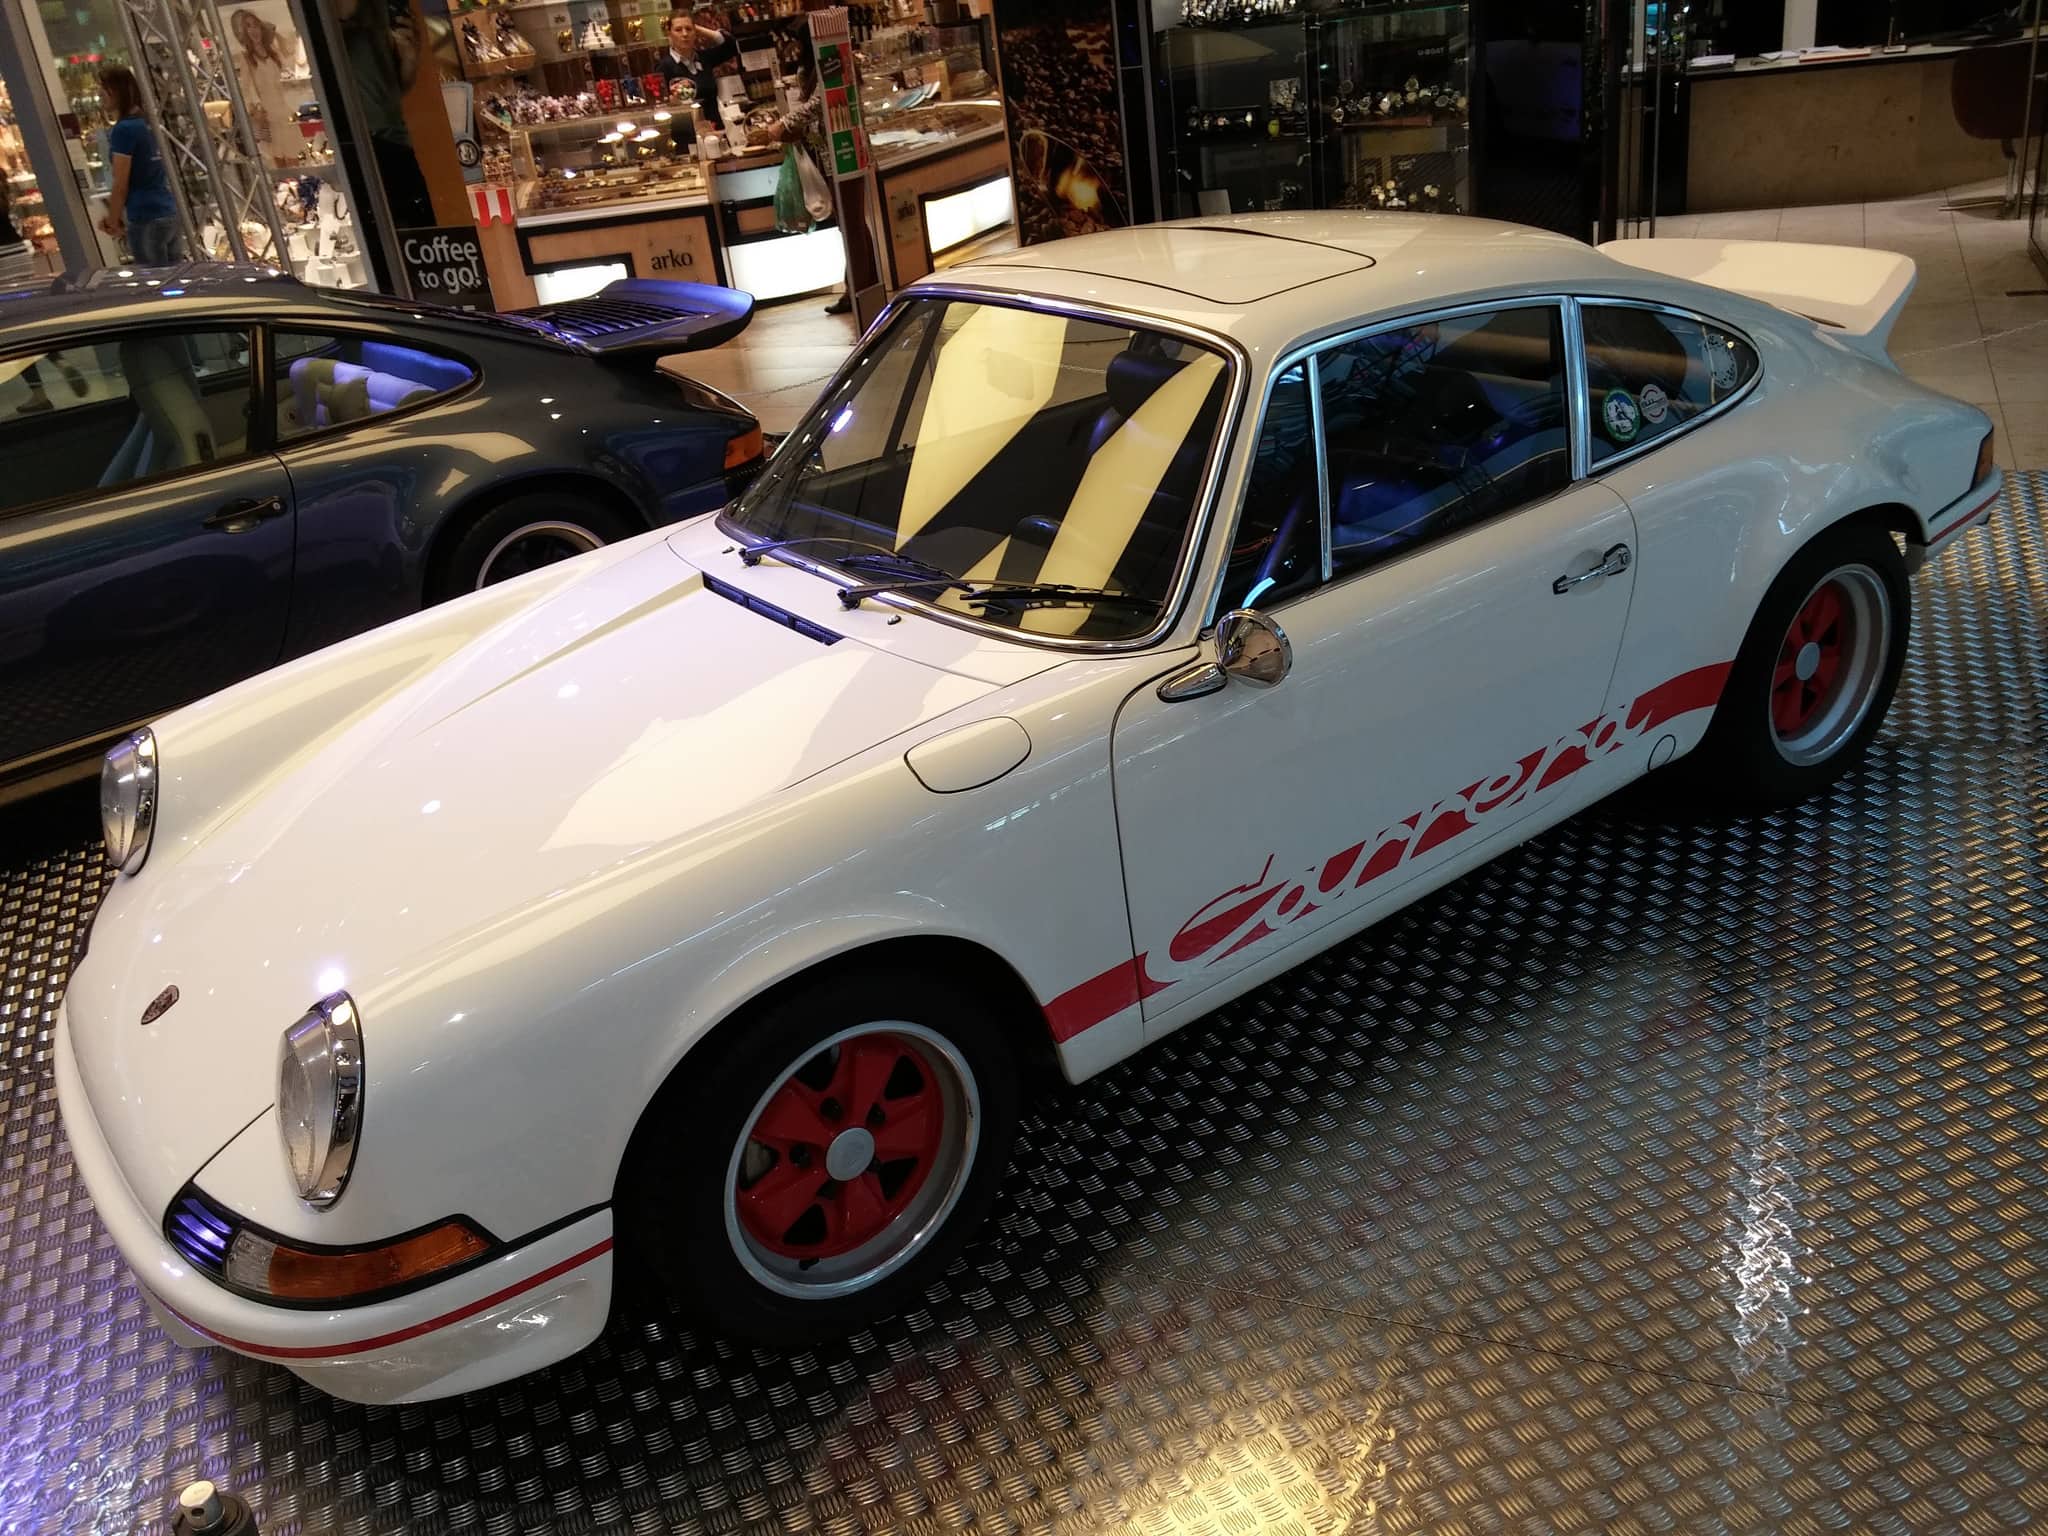 Obrazem: V zajetí Porsche aneb krása v nákupním centru